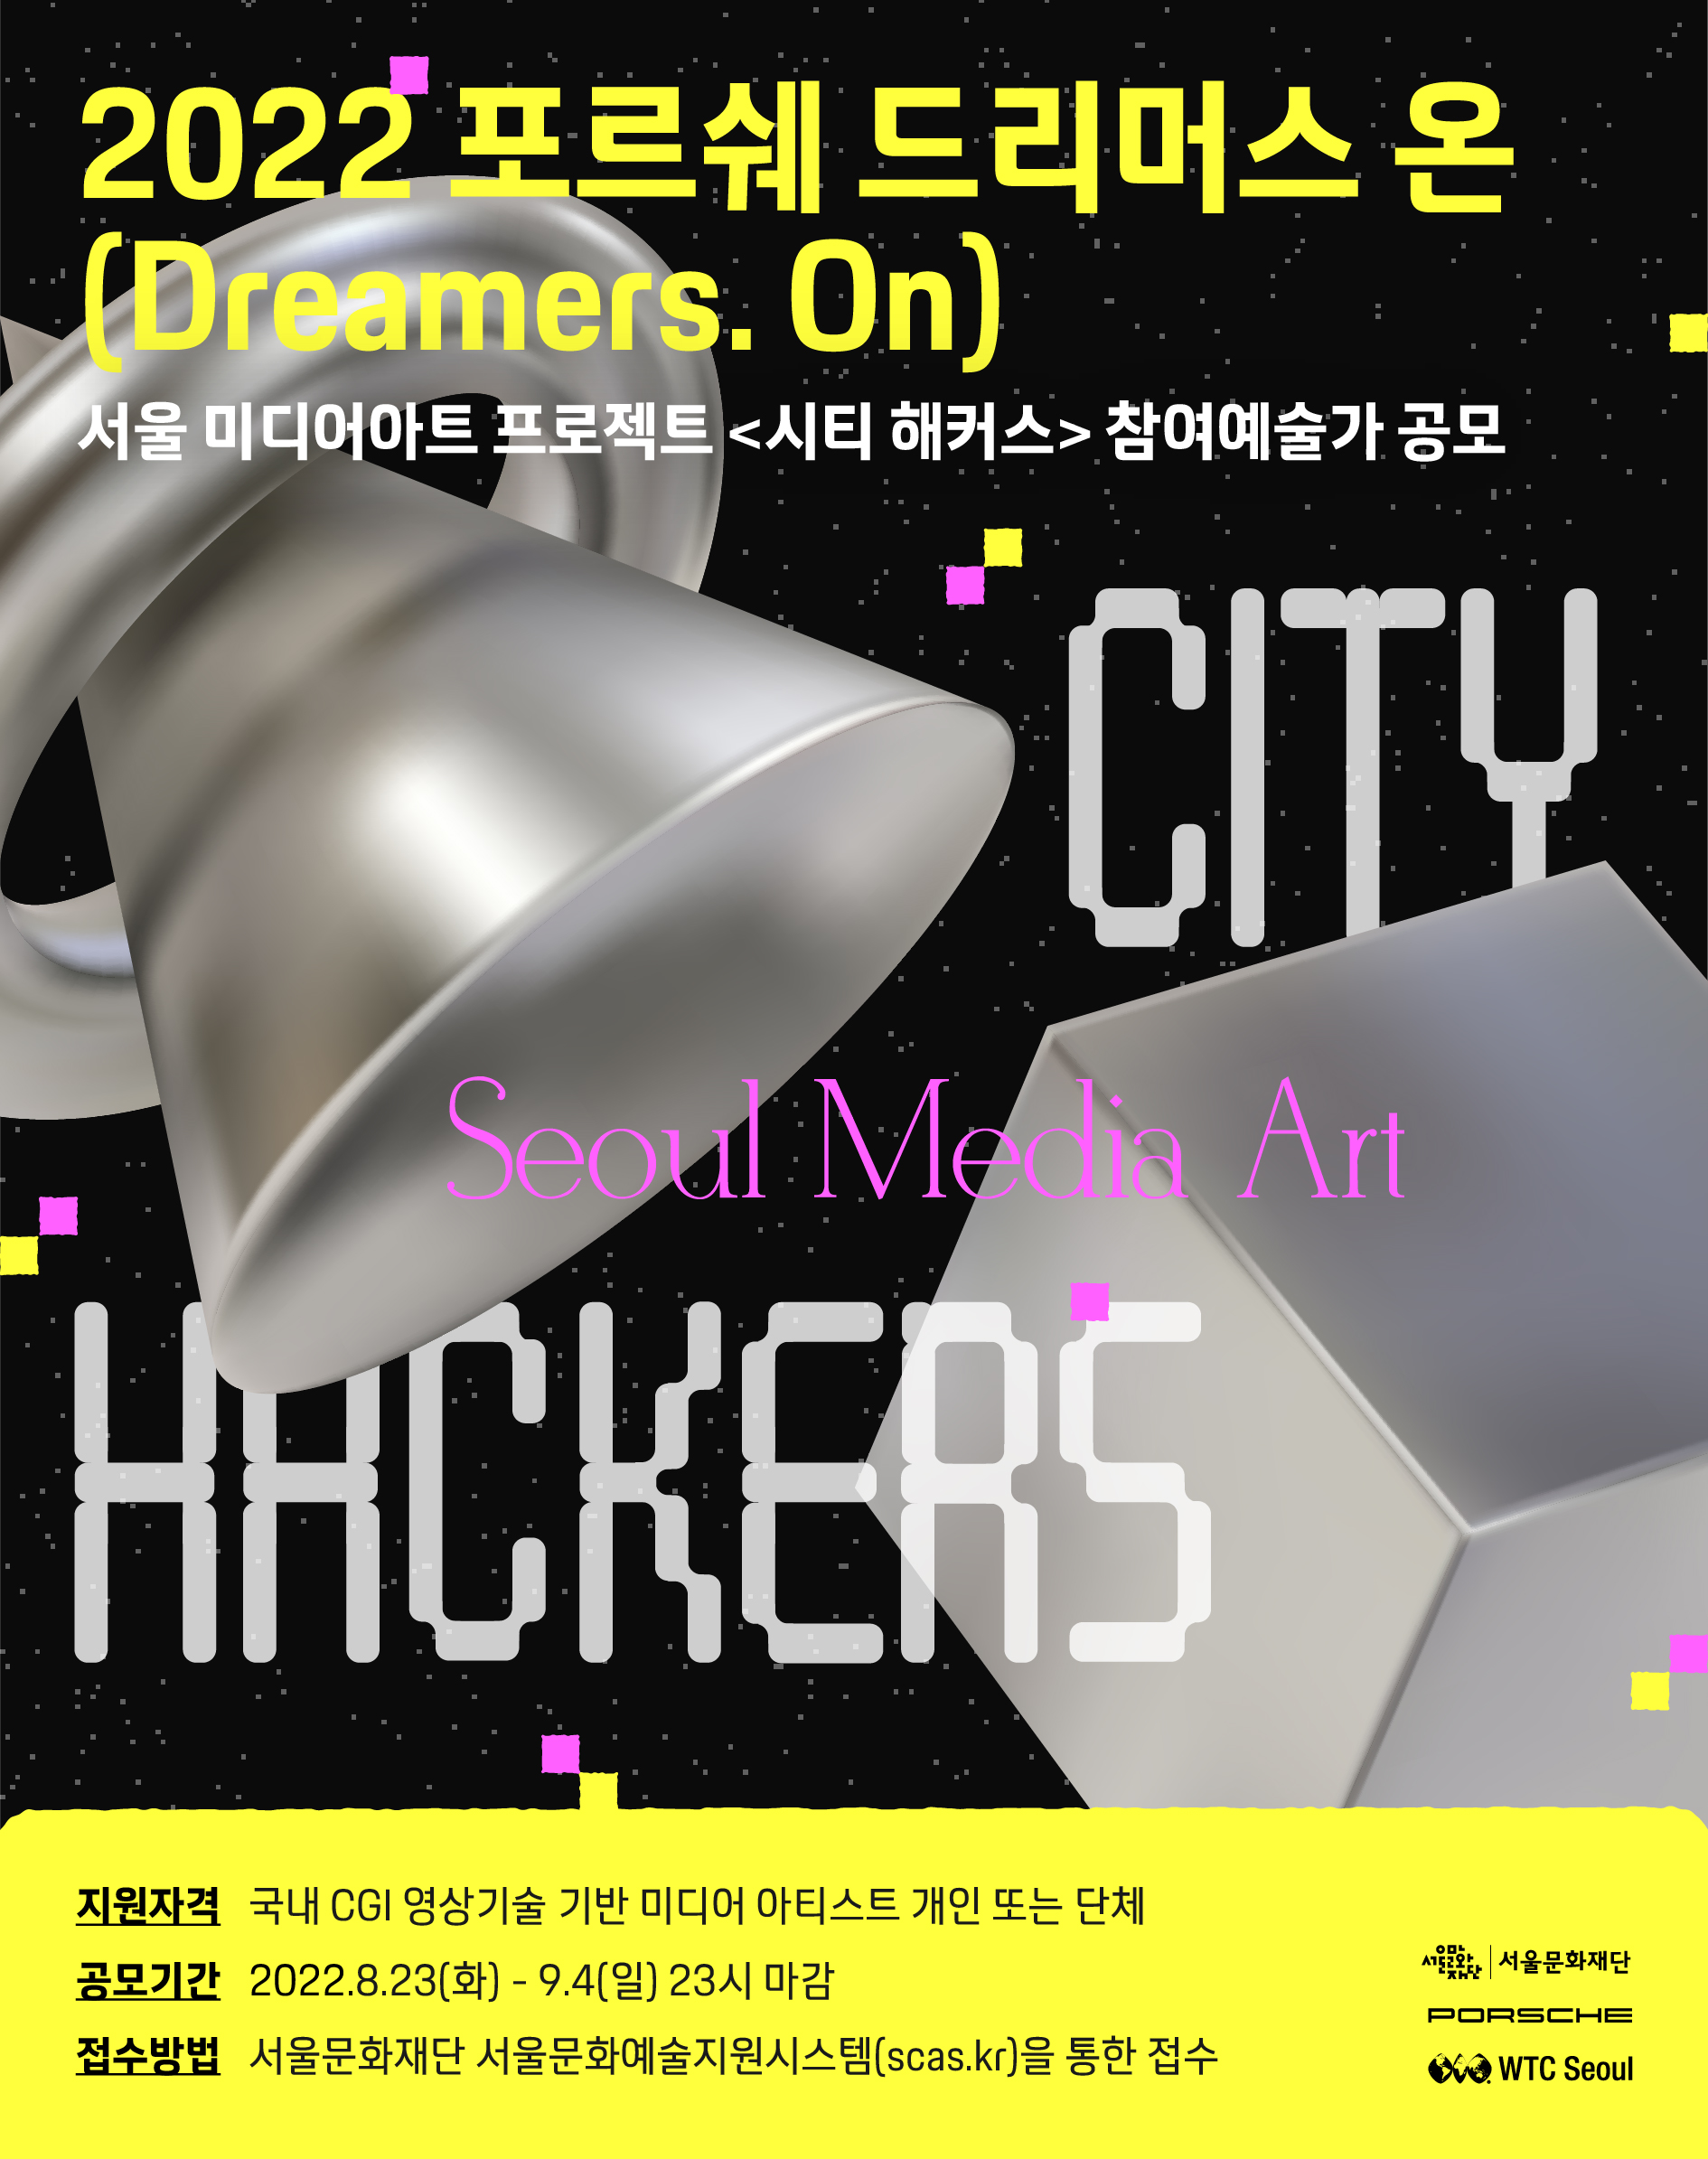 2022년 포르쉐 드리머스 온(Dreamers. On) - 서울 미디어아트 프로젝트 <시티 해커스>